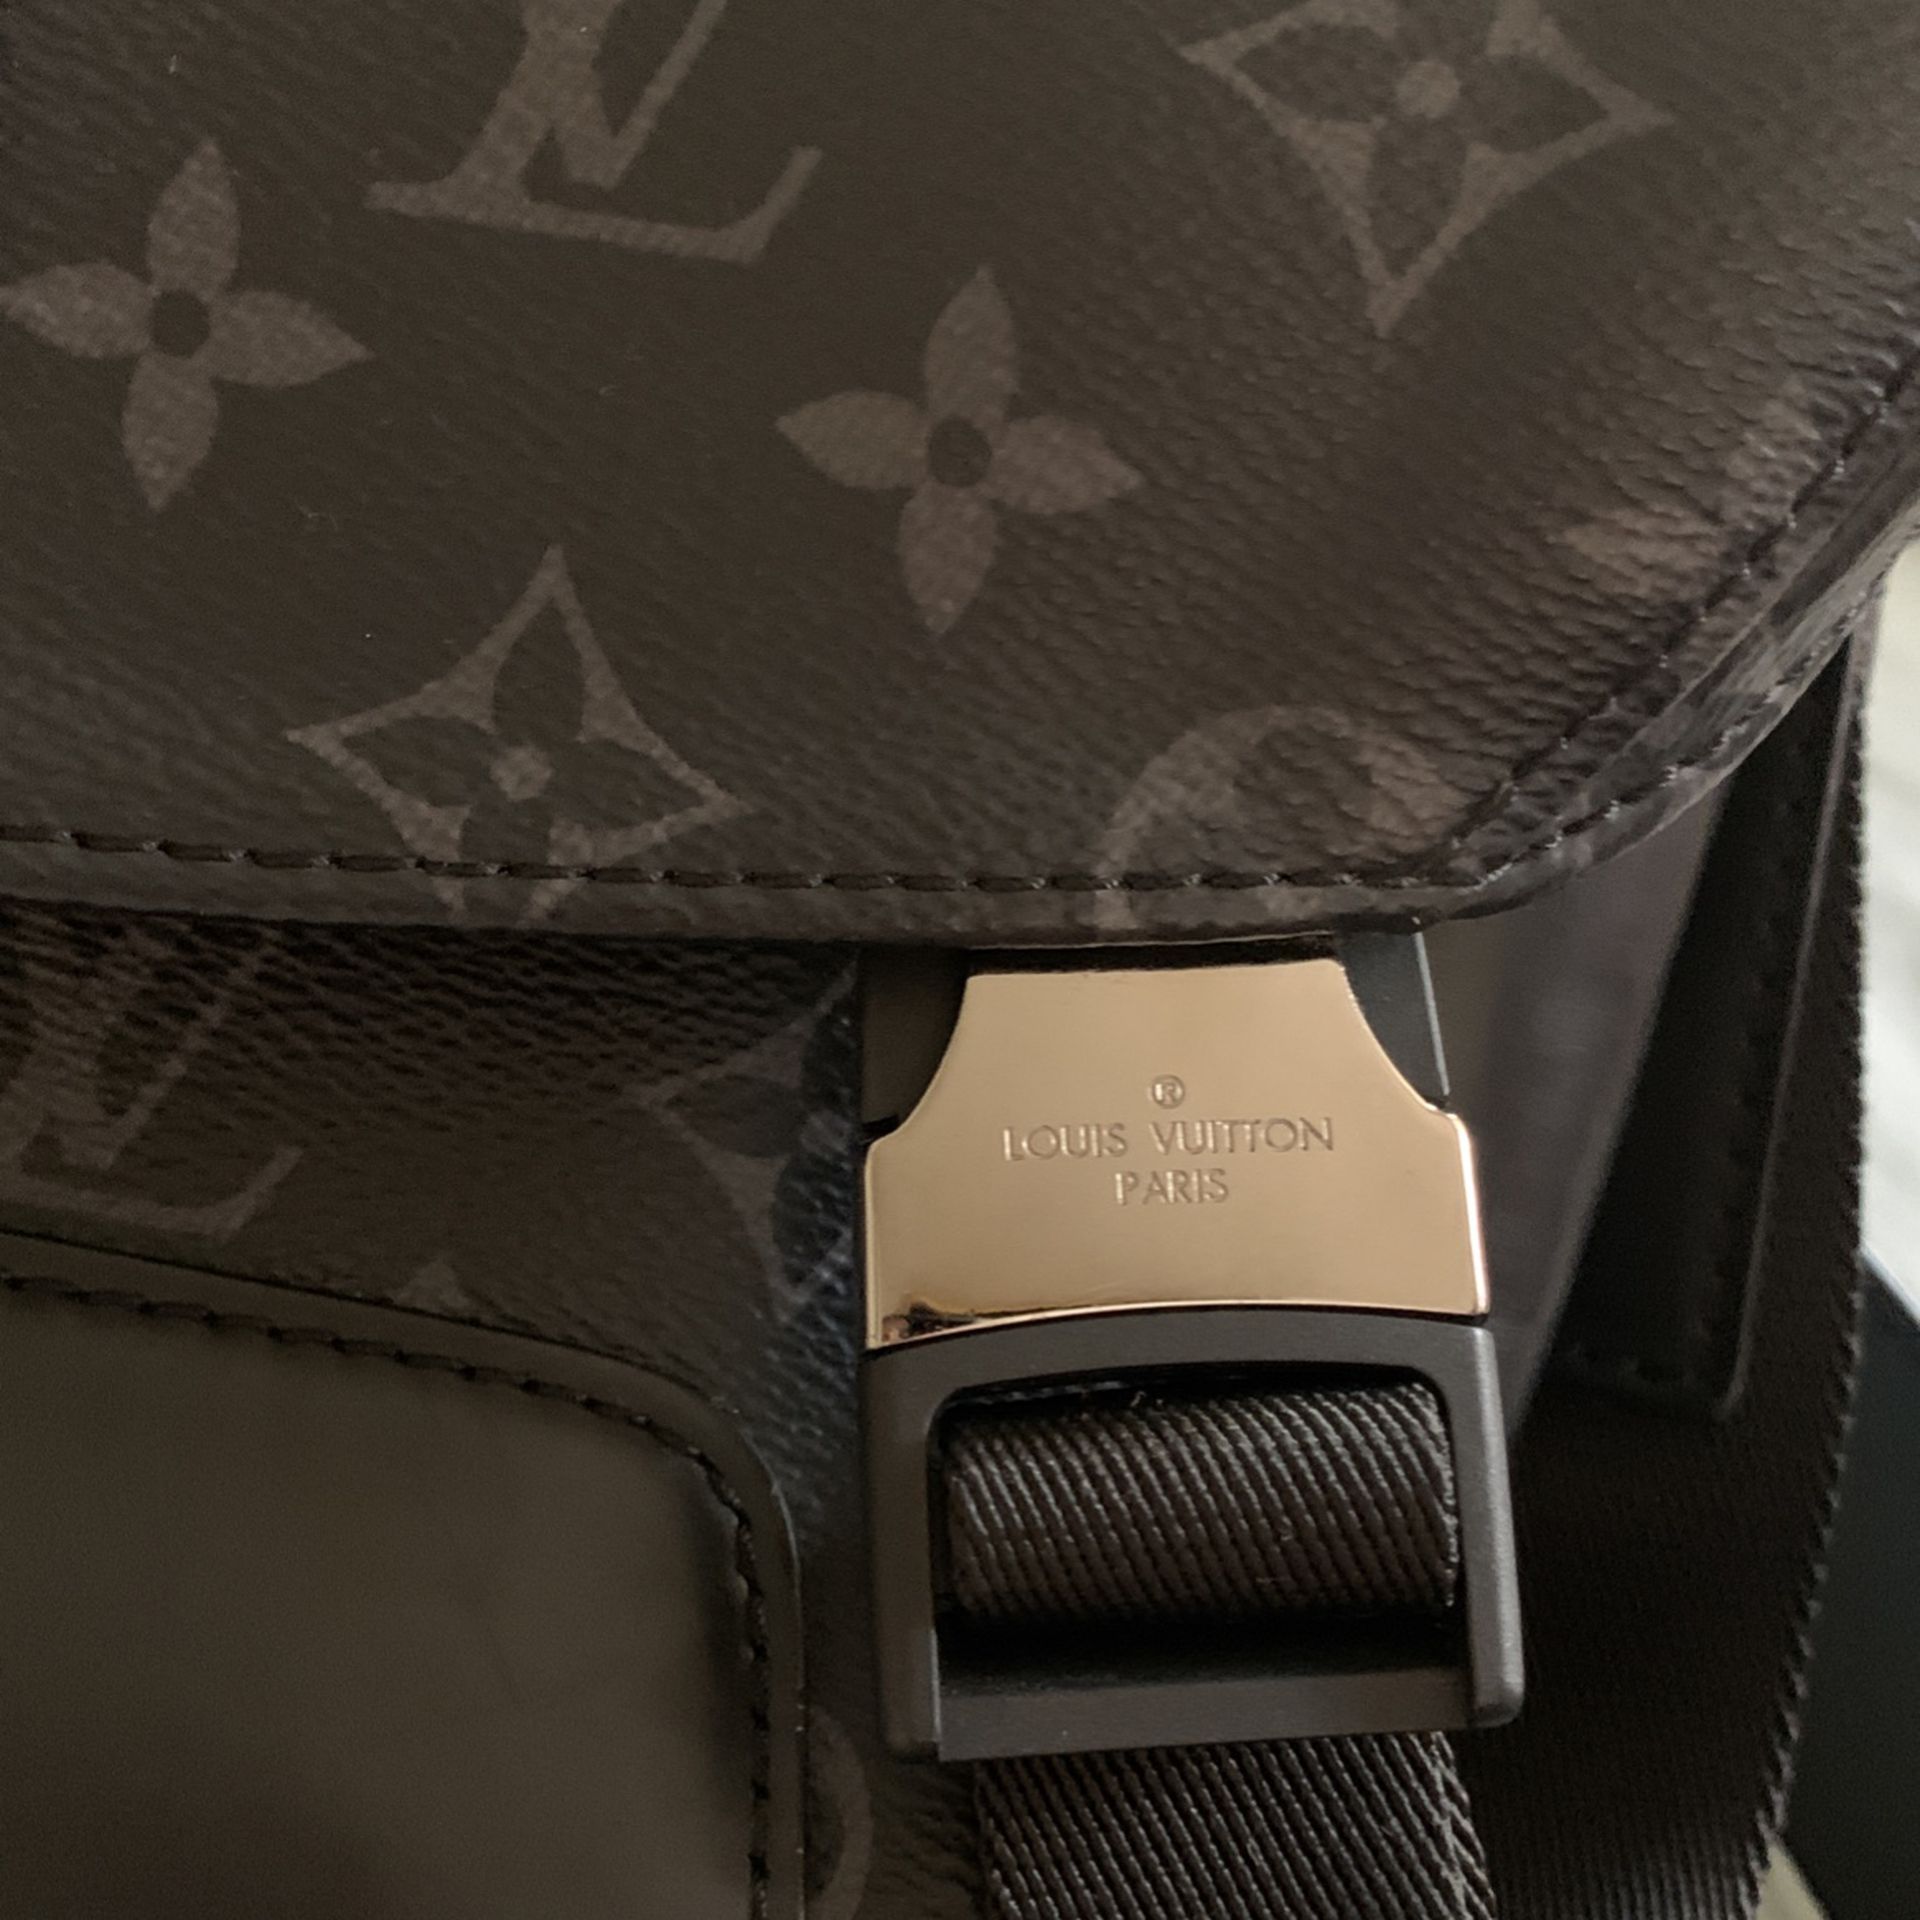 Men's Louis Vuitton Messenger Bag… Original for Sale in Huntington